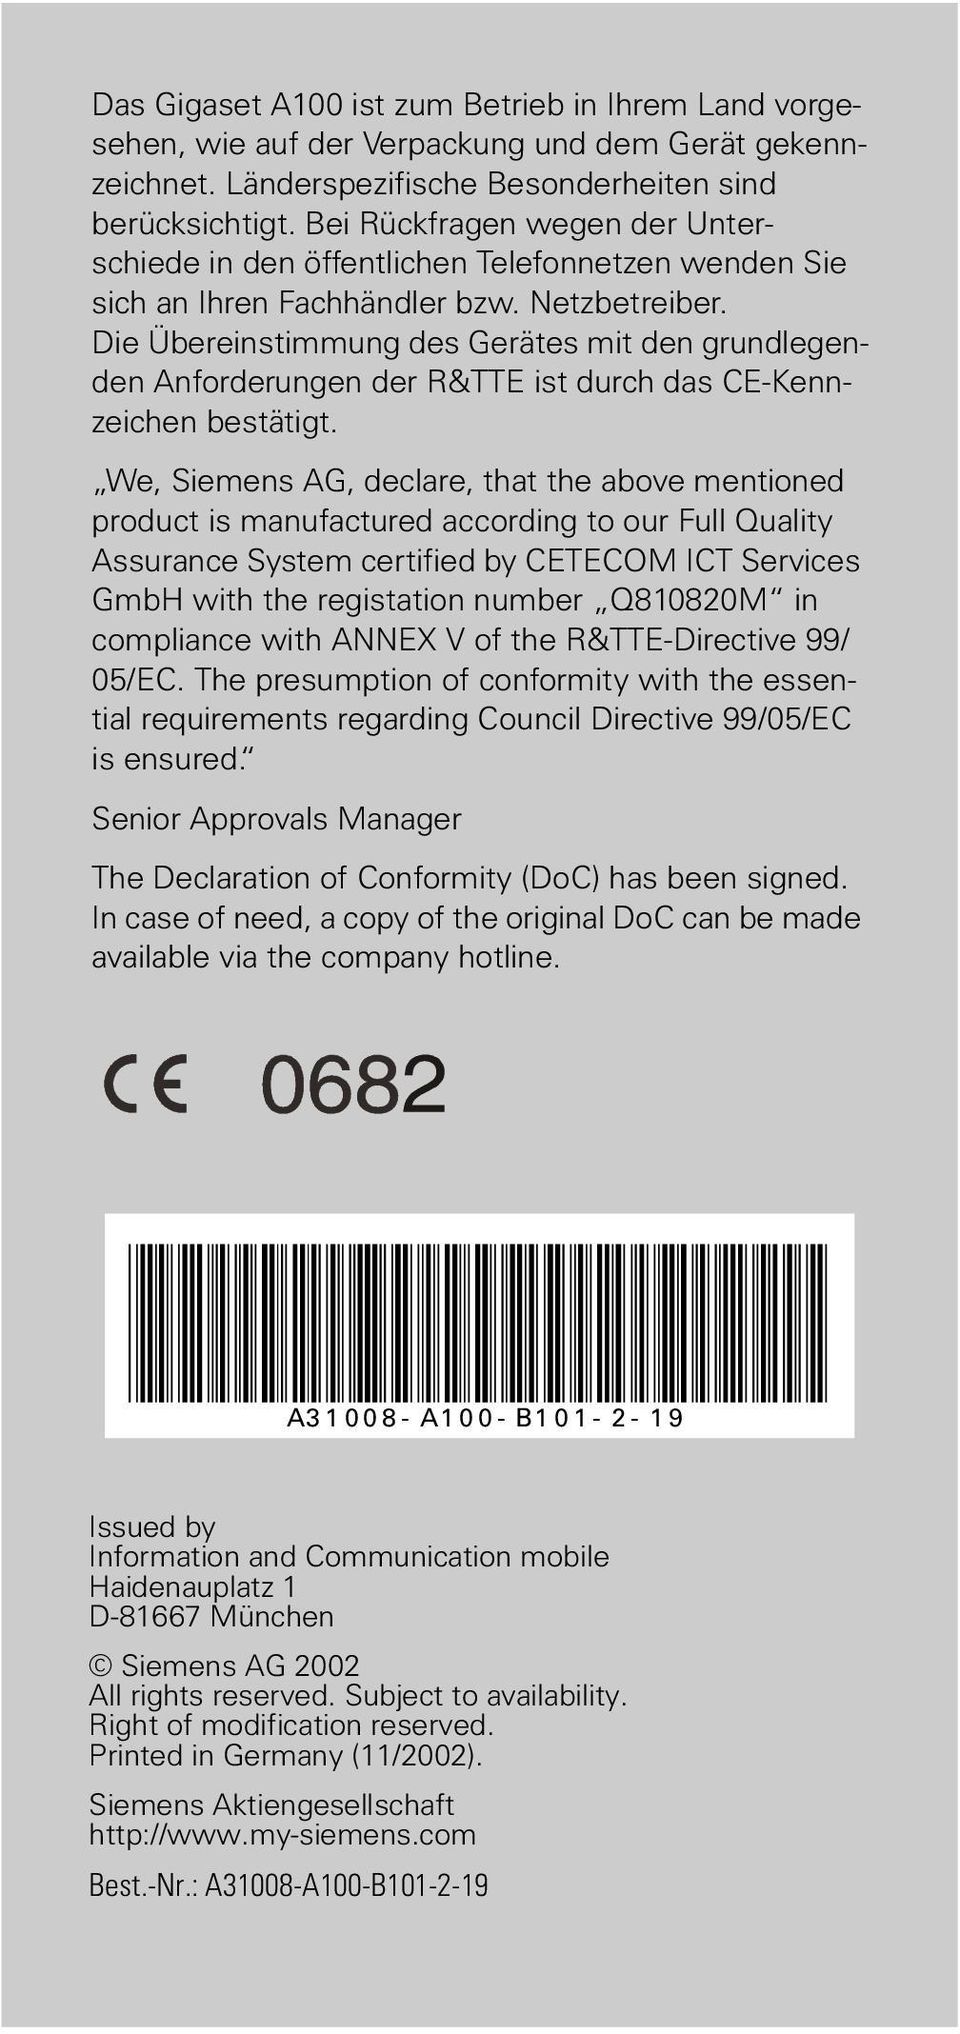 Die Übereinstimmung des Gerätes mit den grundlegenden Anforderungen der R&TTE ist durch das CE-Kennzeichen bestätigt.